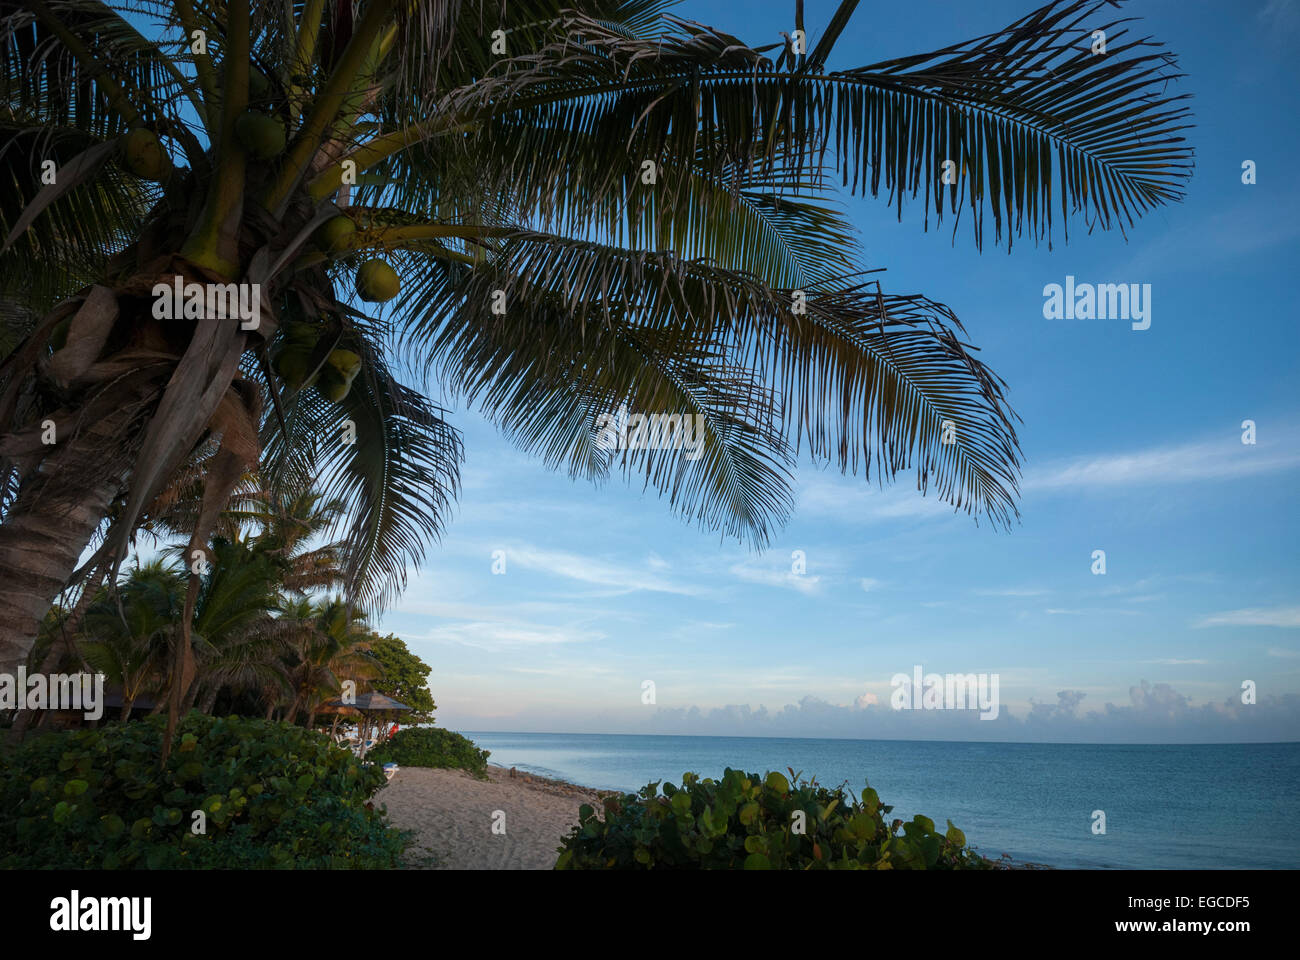 A Cuban beach scene near Jibacoa Stock Photo